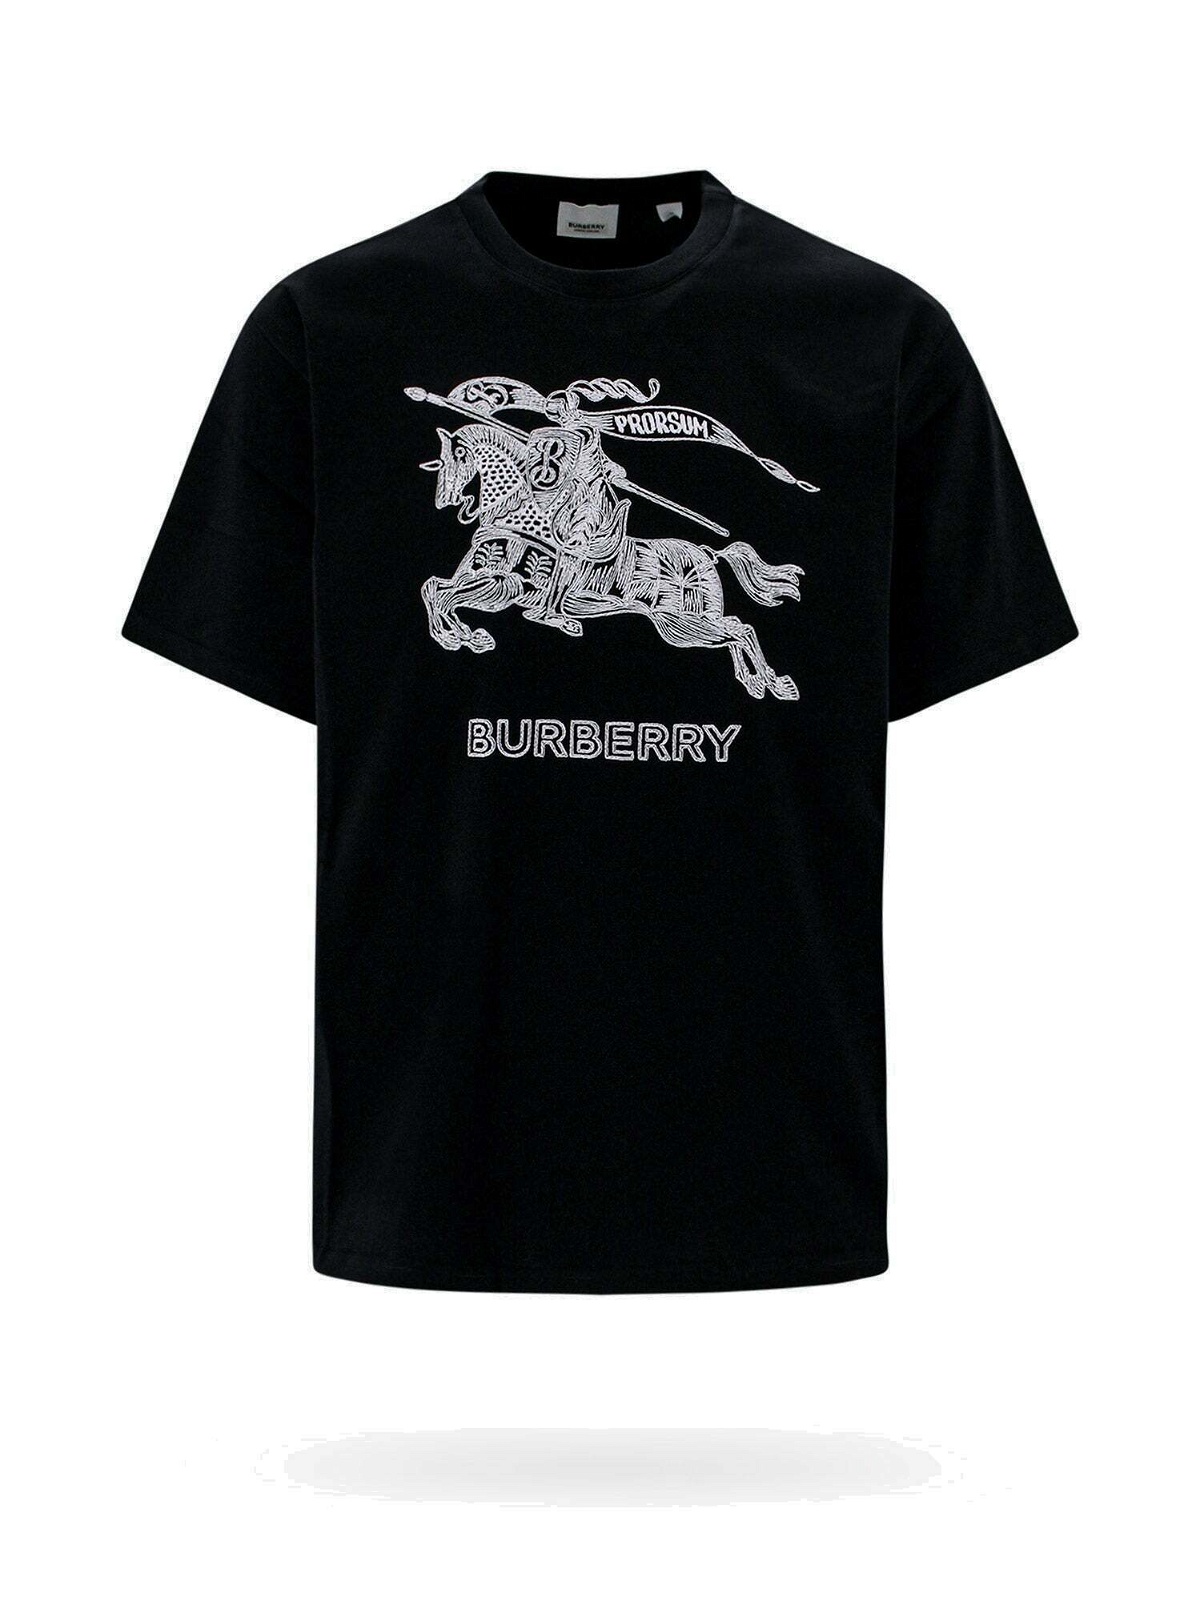 Burberry T Shirt Black Mens Burberry